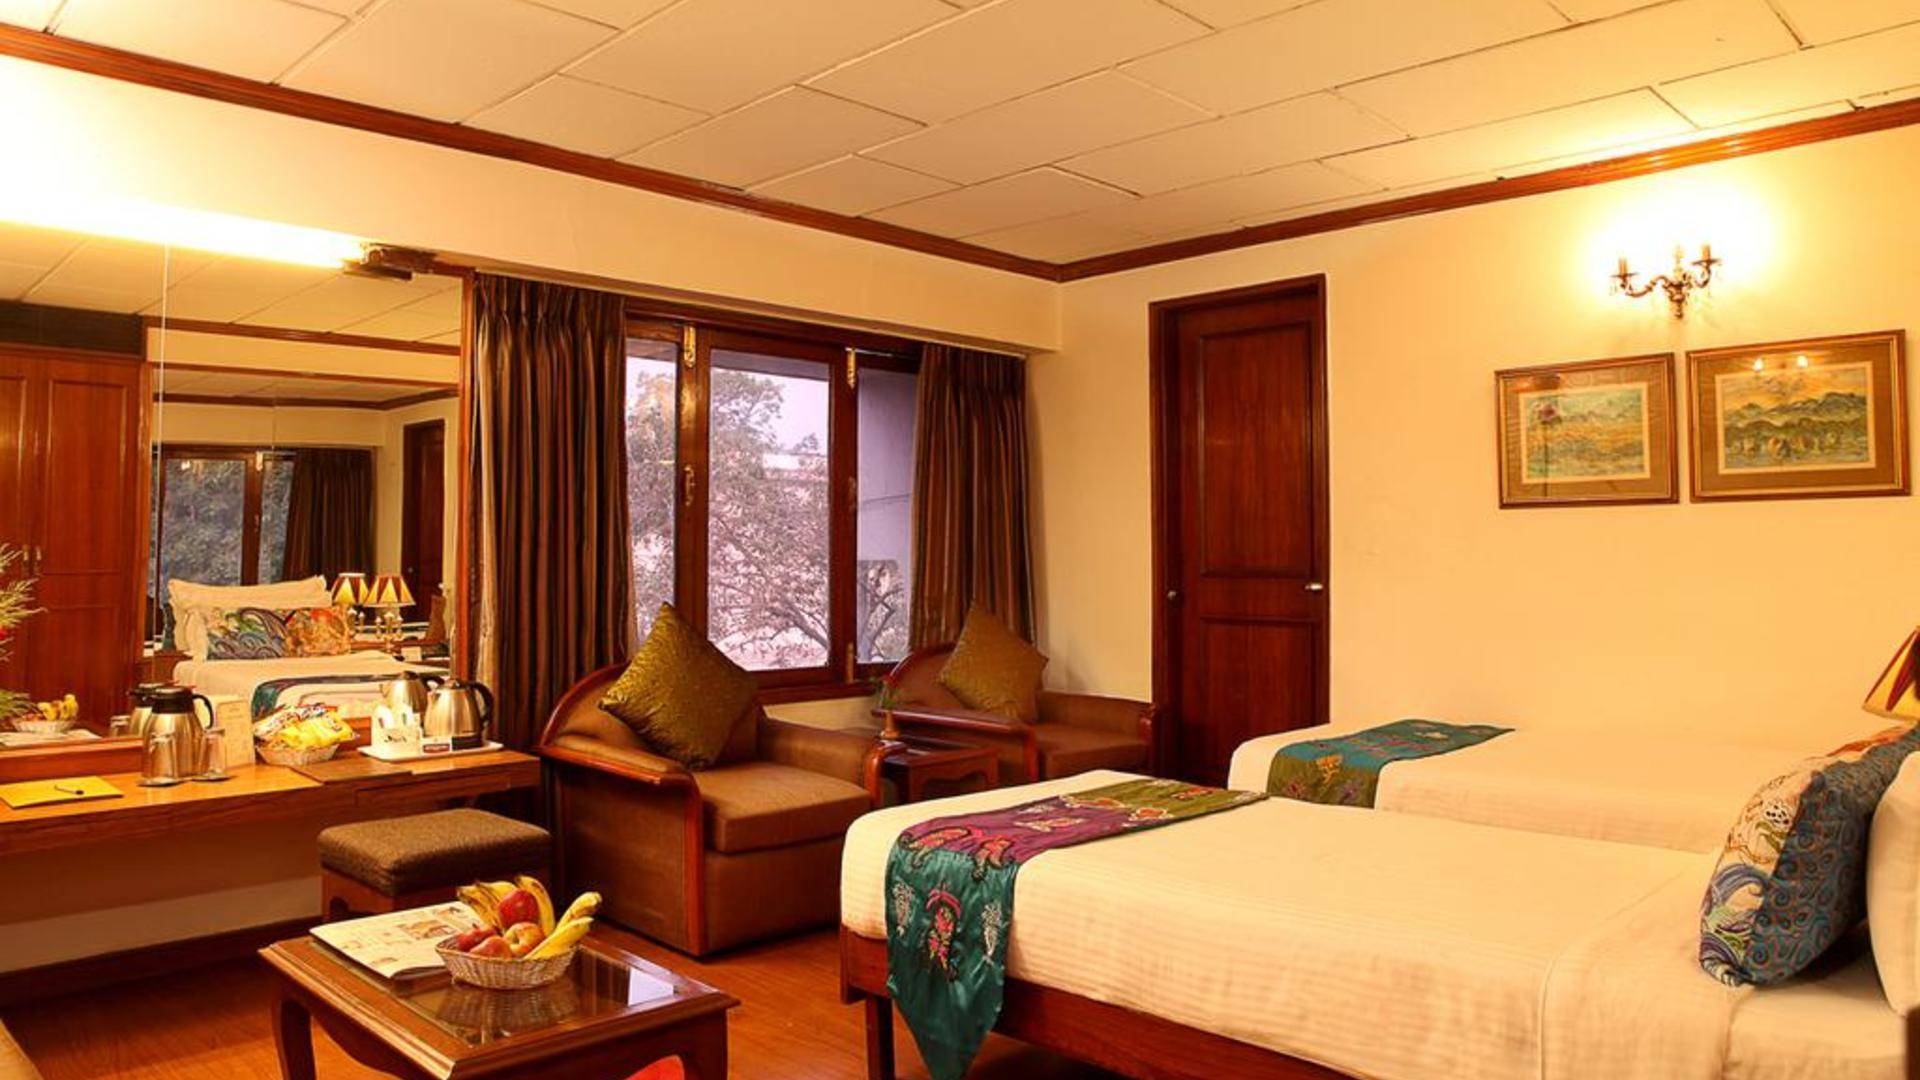 Connaught royale delhi
 в нью-дели (индия) / отели, гостиницы и хостелы / мой путеводитель